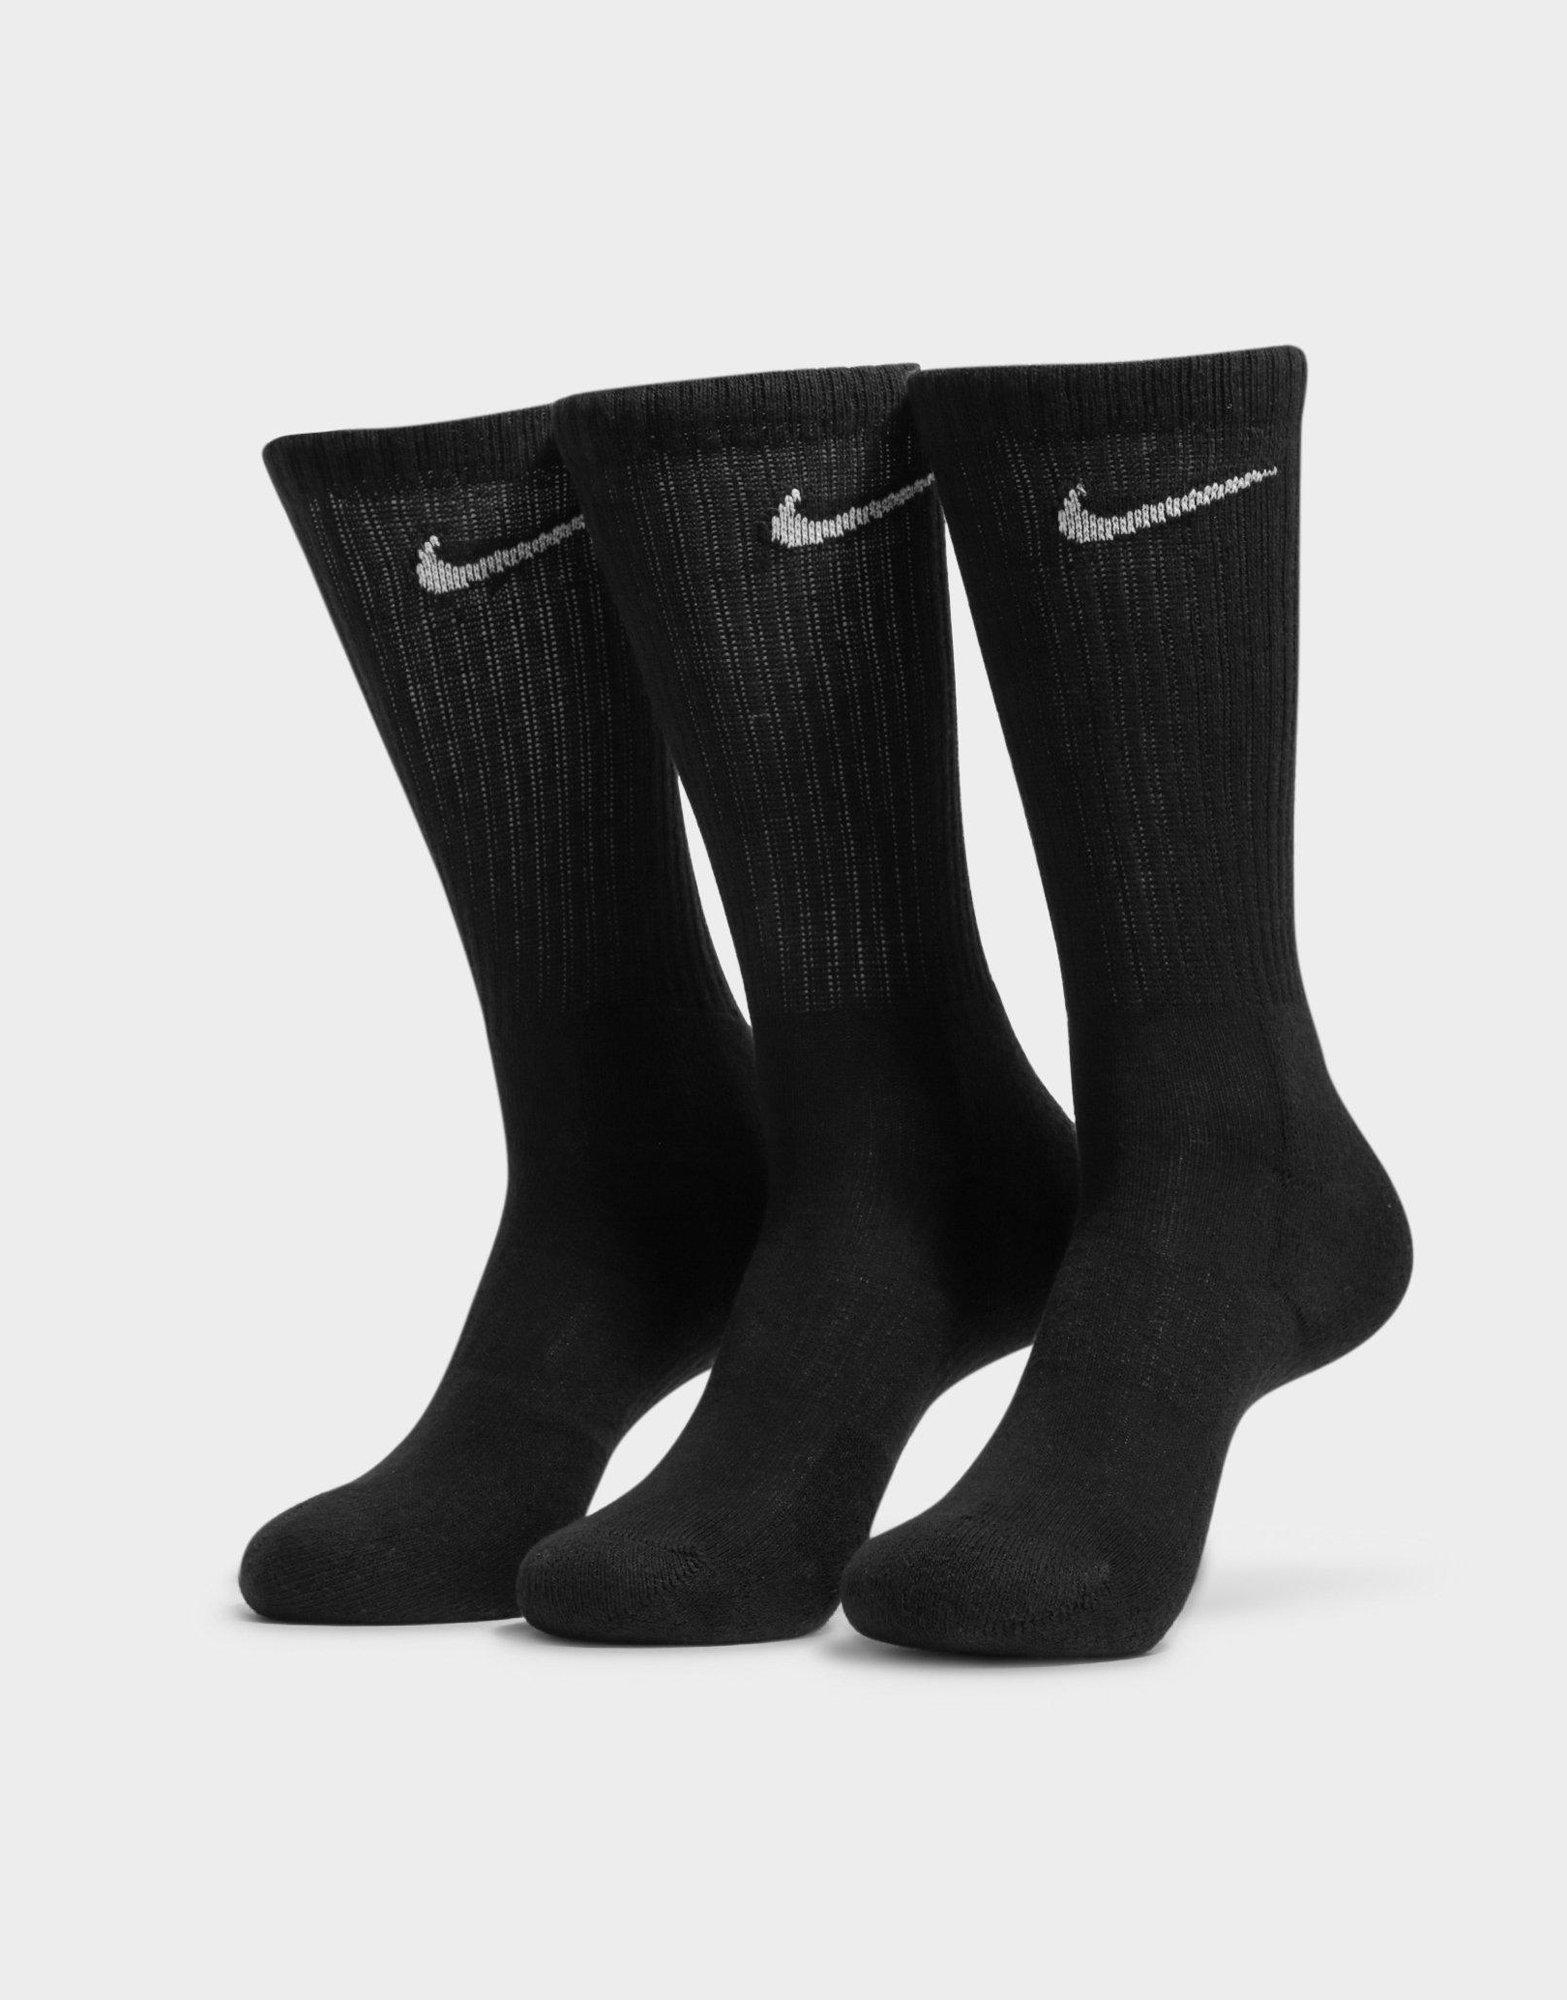 Black Nike 3-Pack Cushioned Crew Socks | JD Sports Malaysia